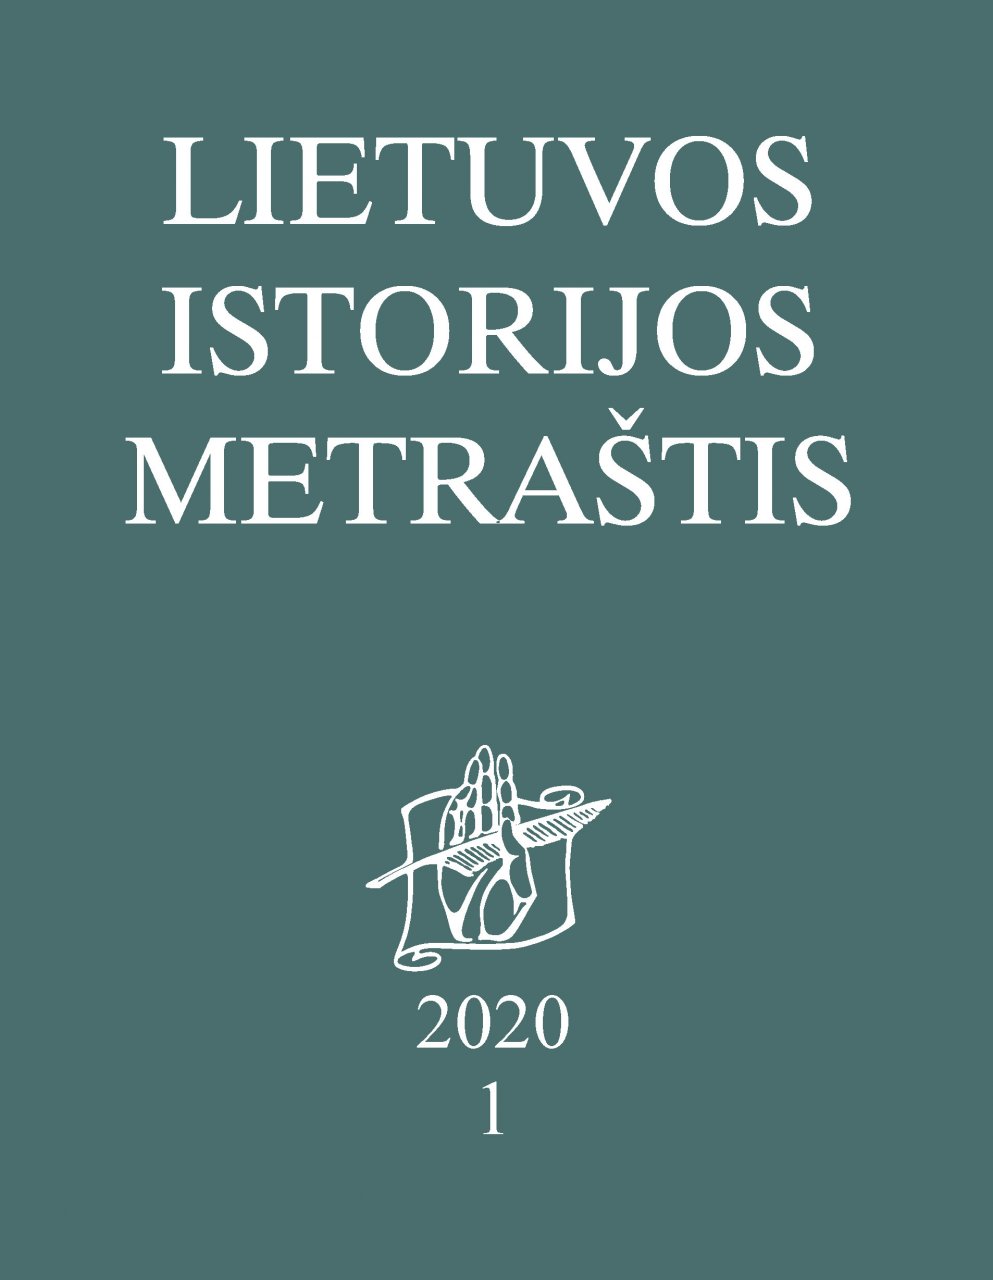 Lietuvos istorijos metraštis 2020 metai 1